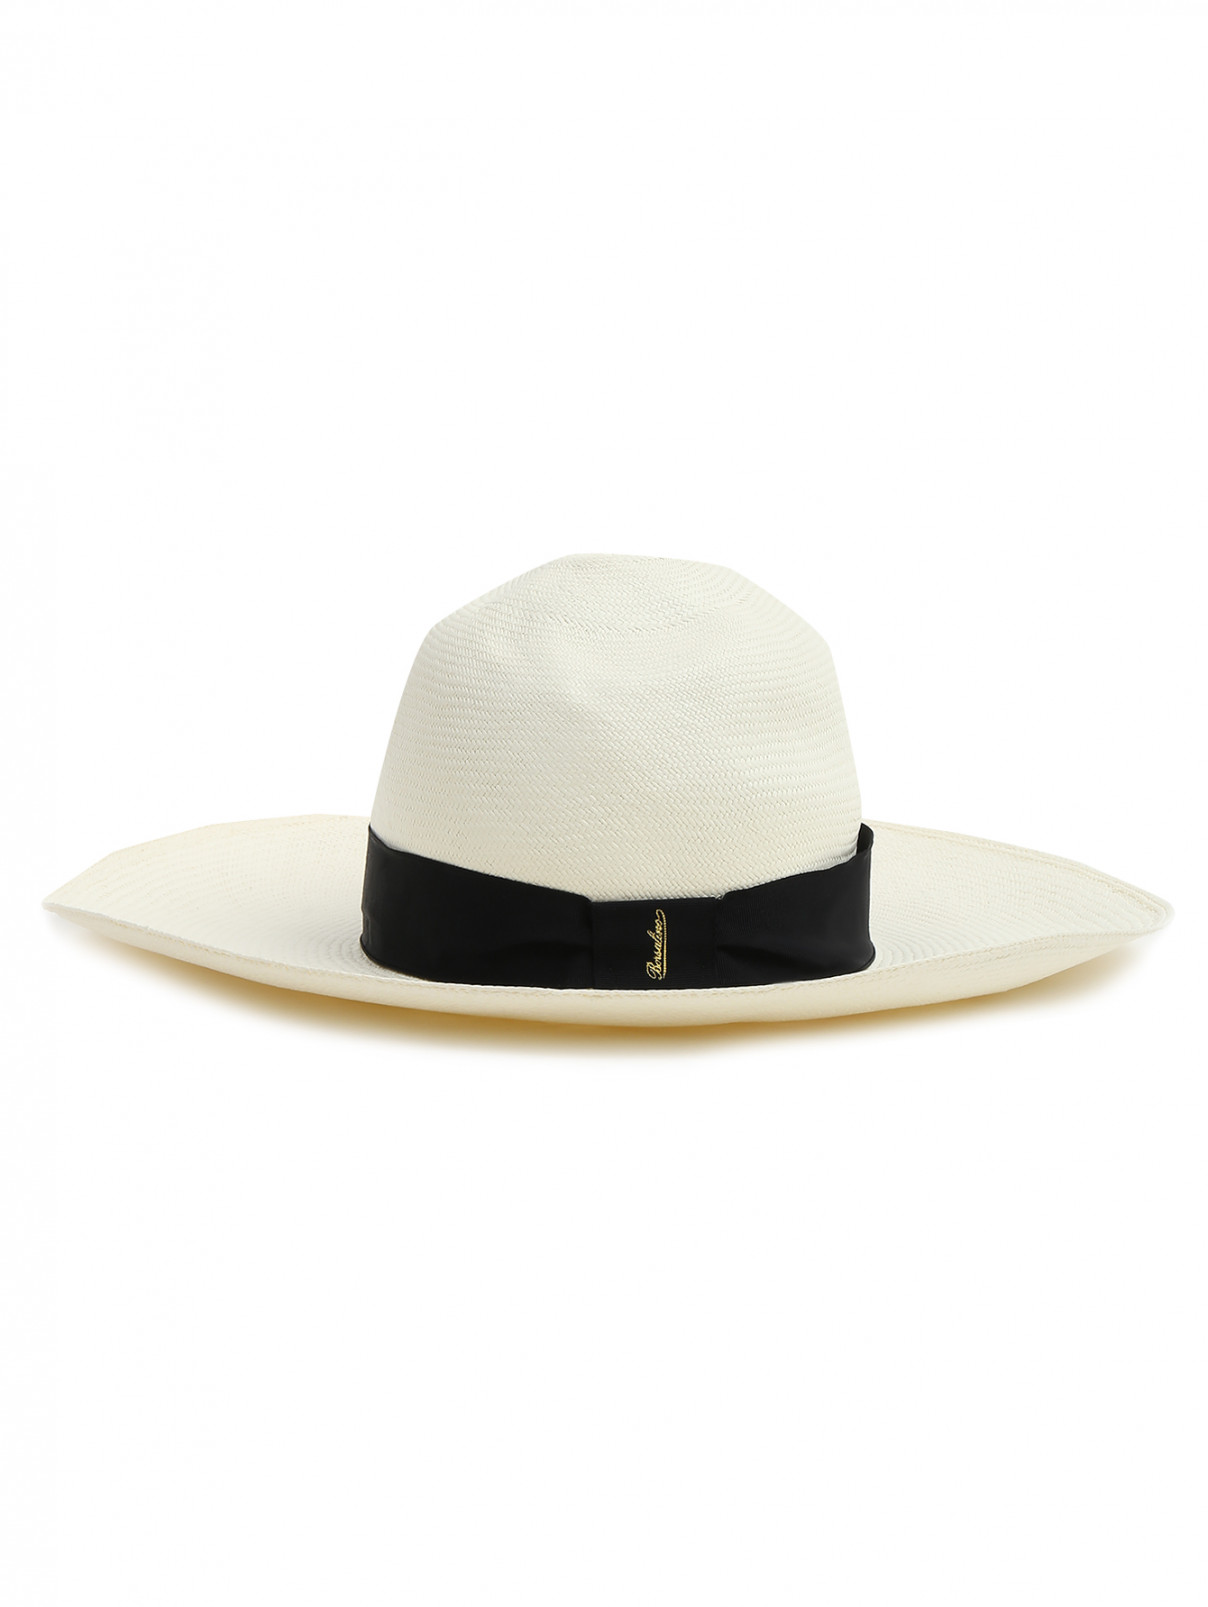 Шляпа соломенная с широкими полями Borsalino  –  Общий вид  – Цвет:  Бежевый